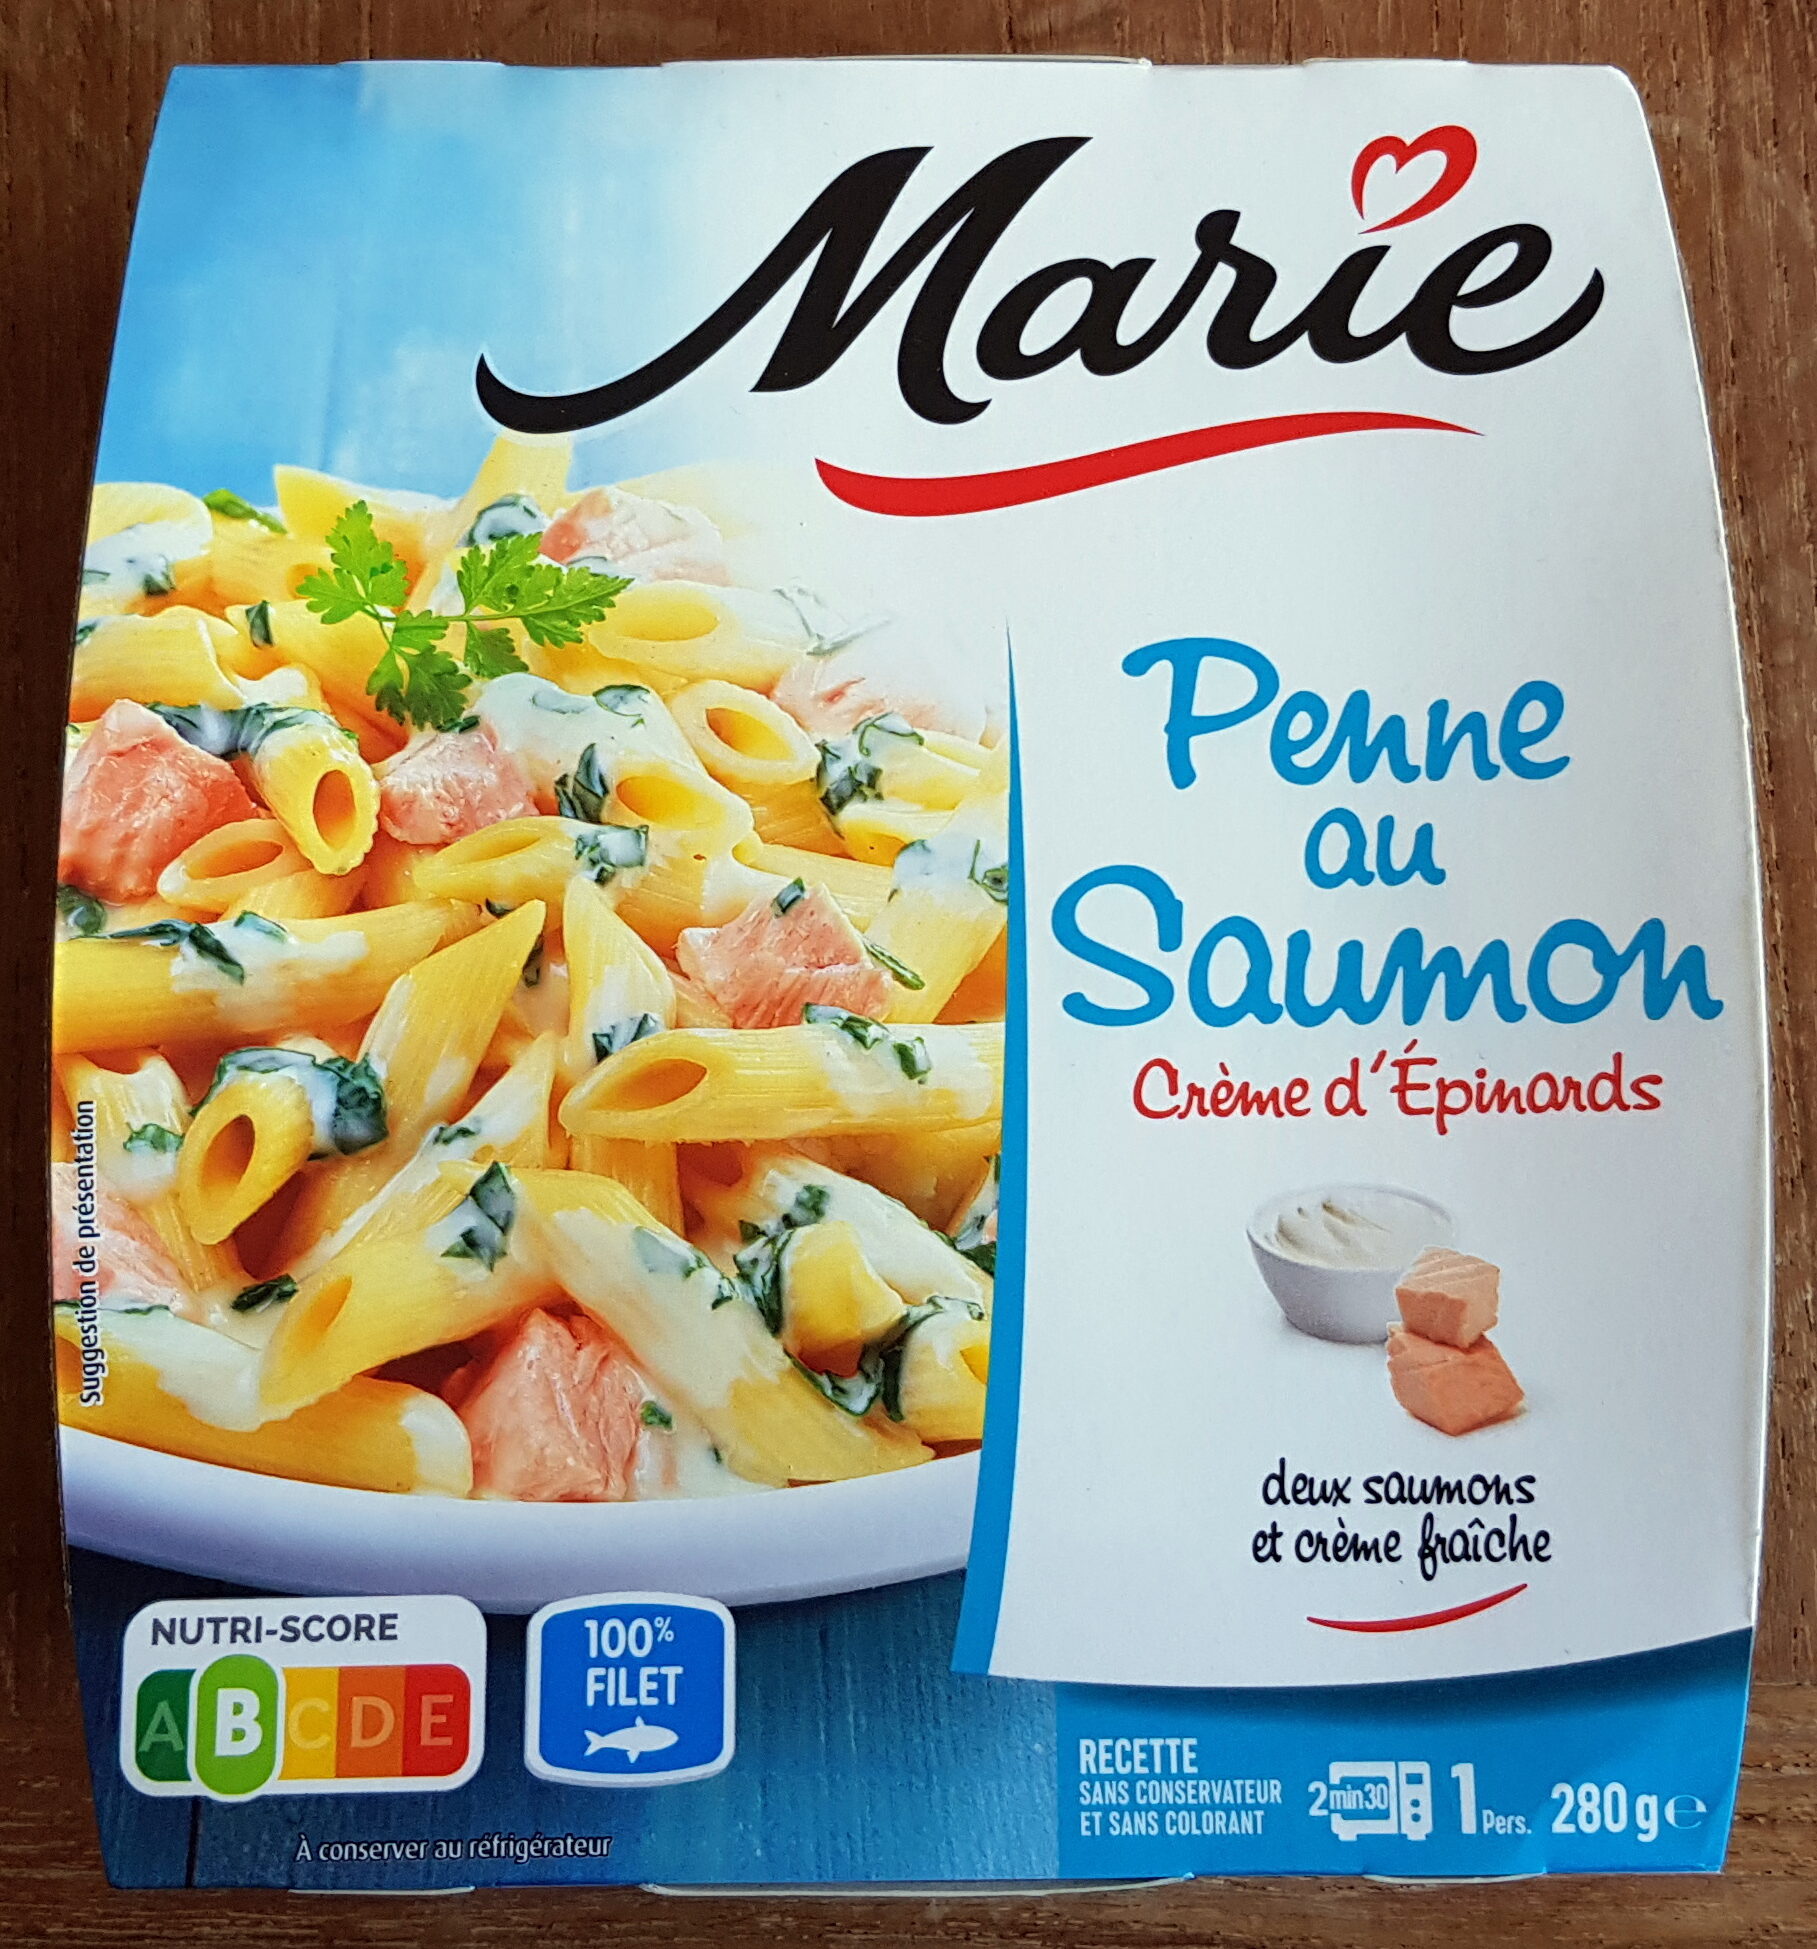 Penne au saumon et crème d'épinards - Product - fr